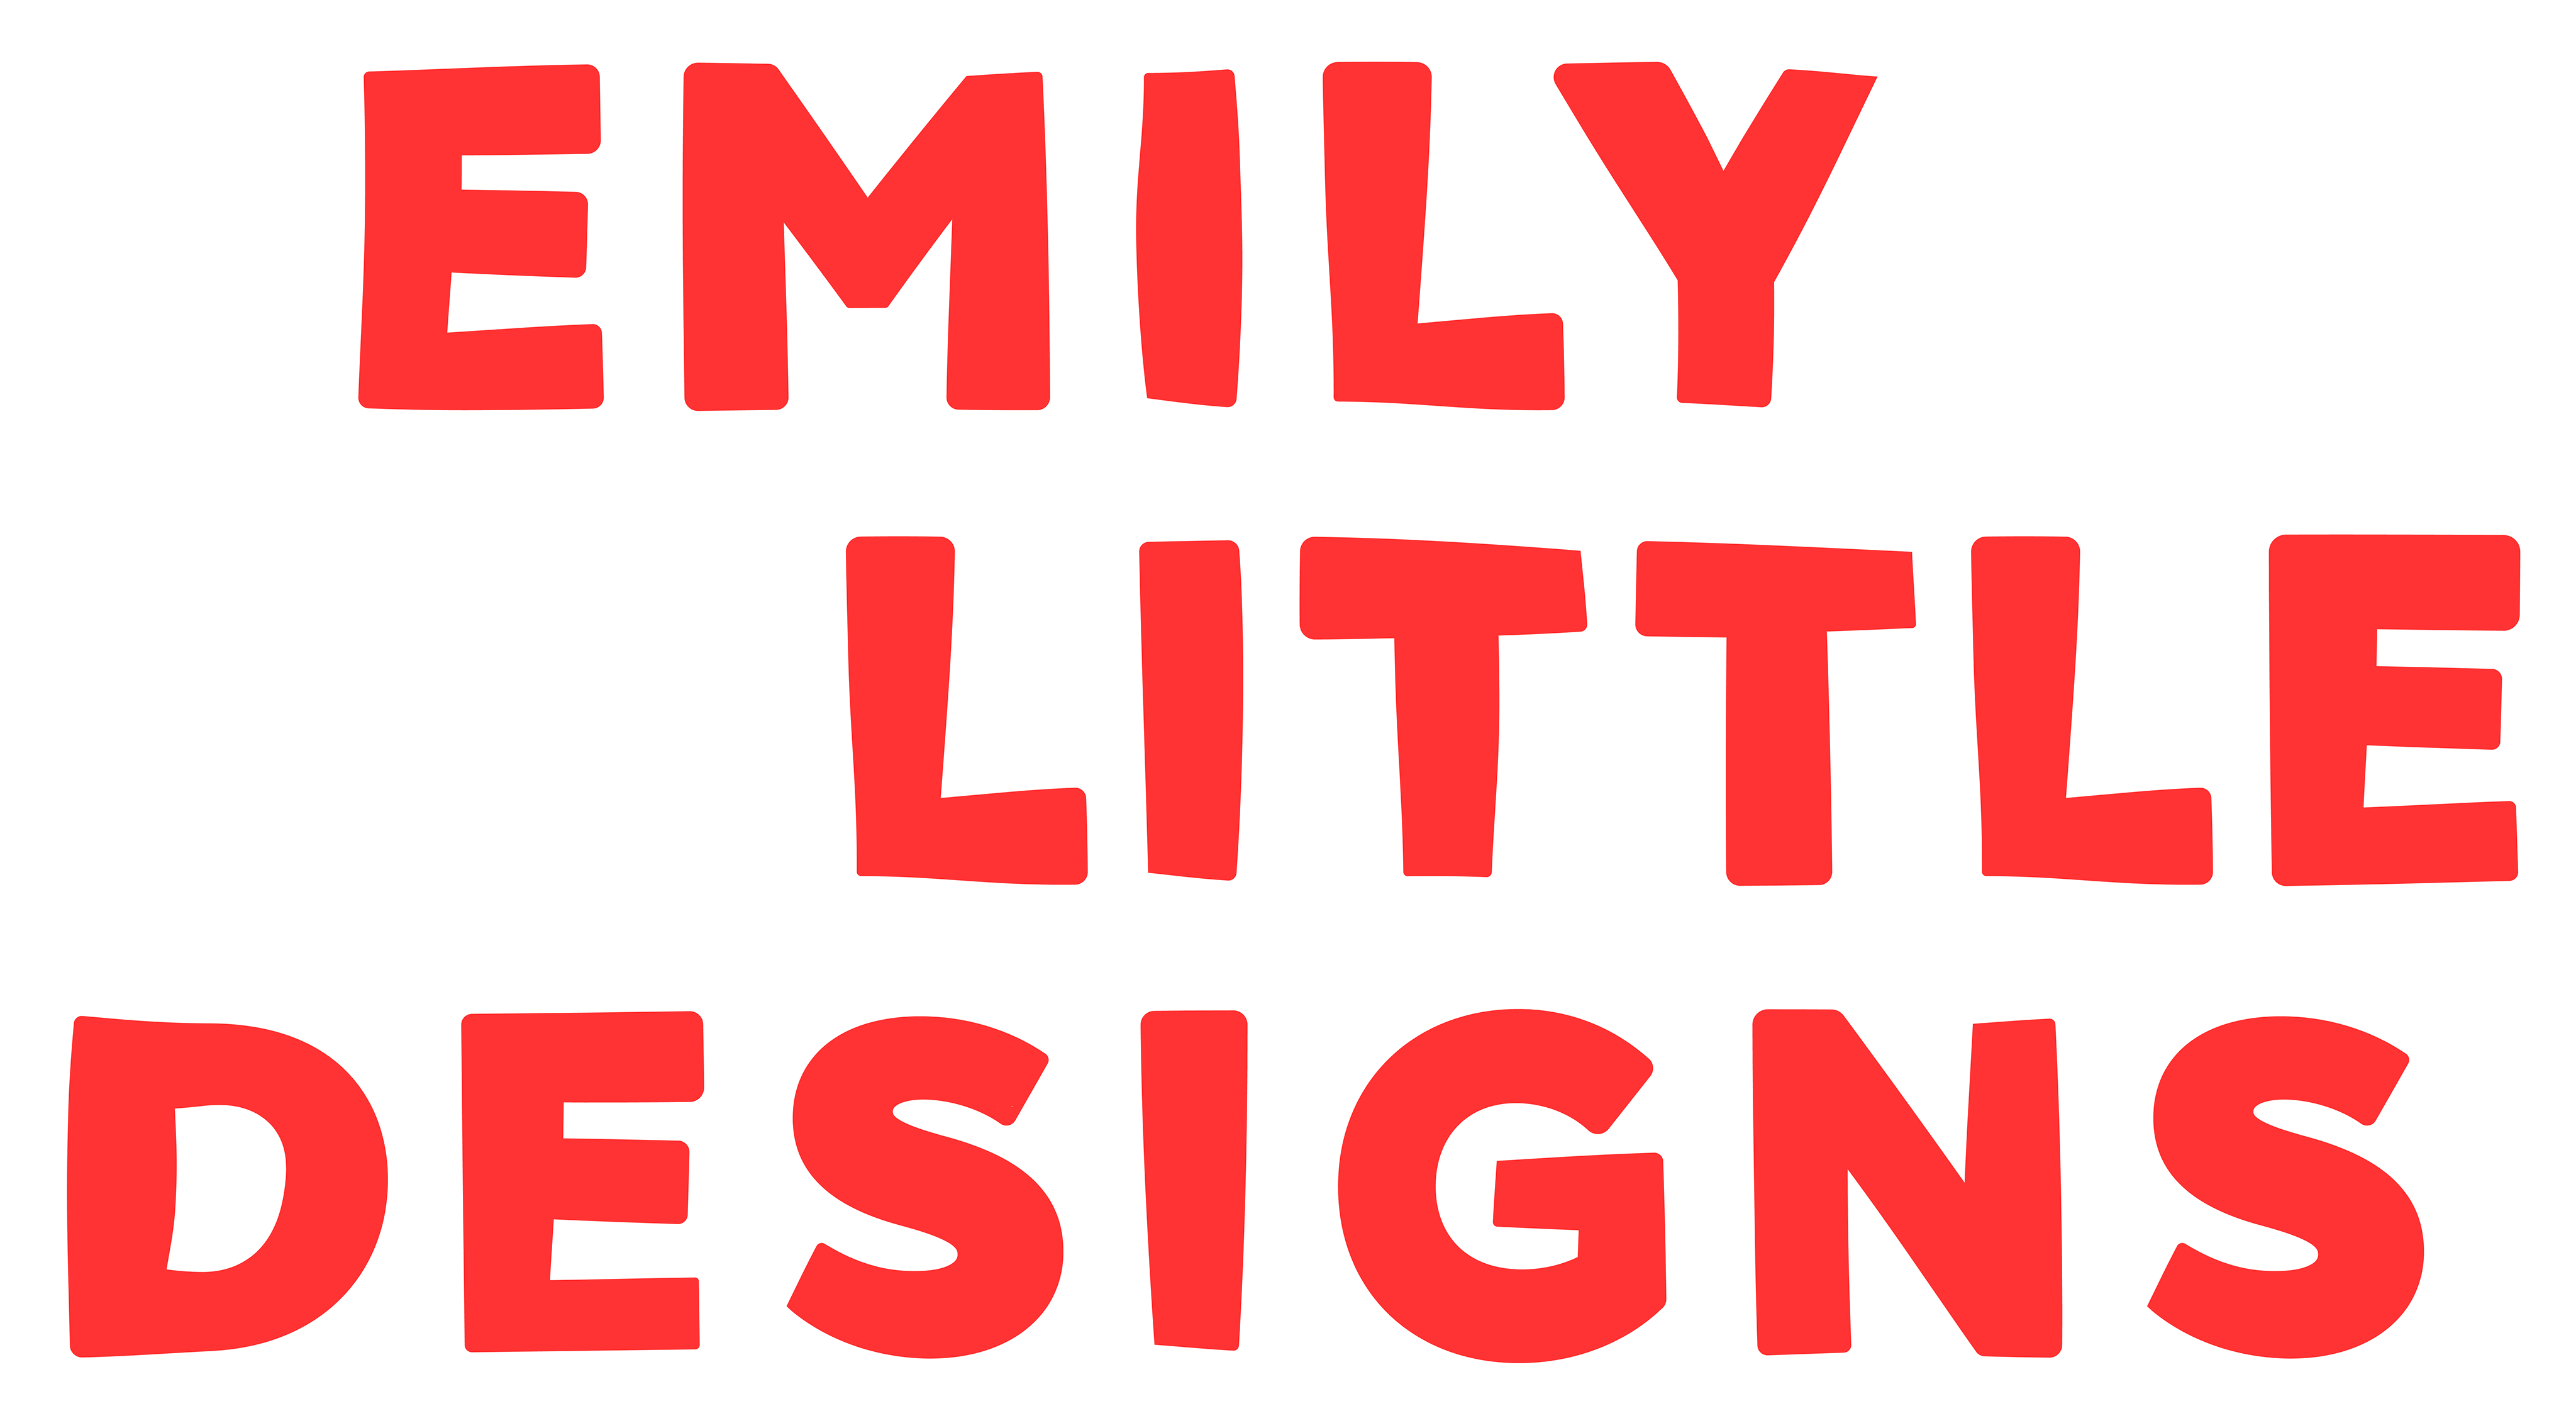 Emily Little